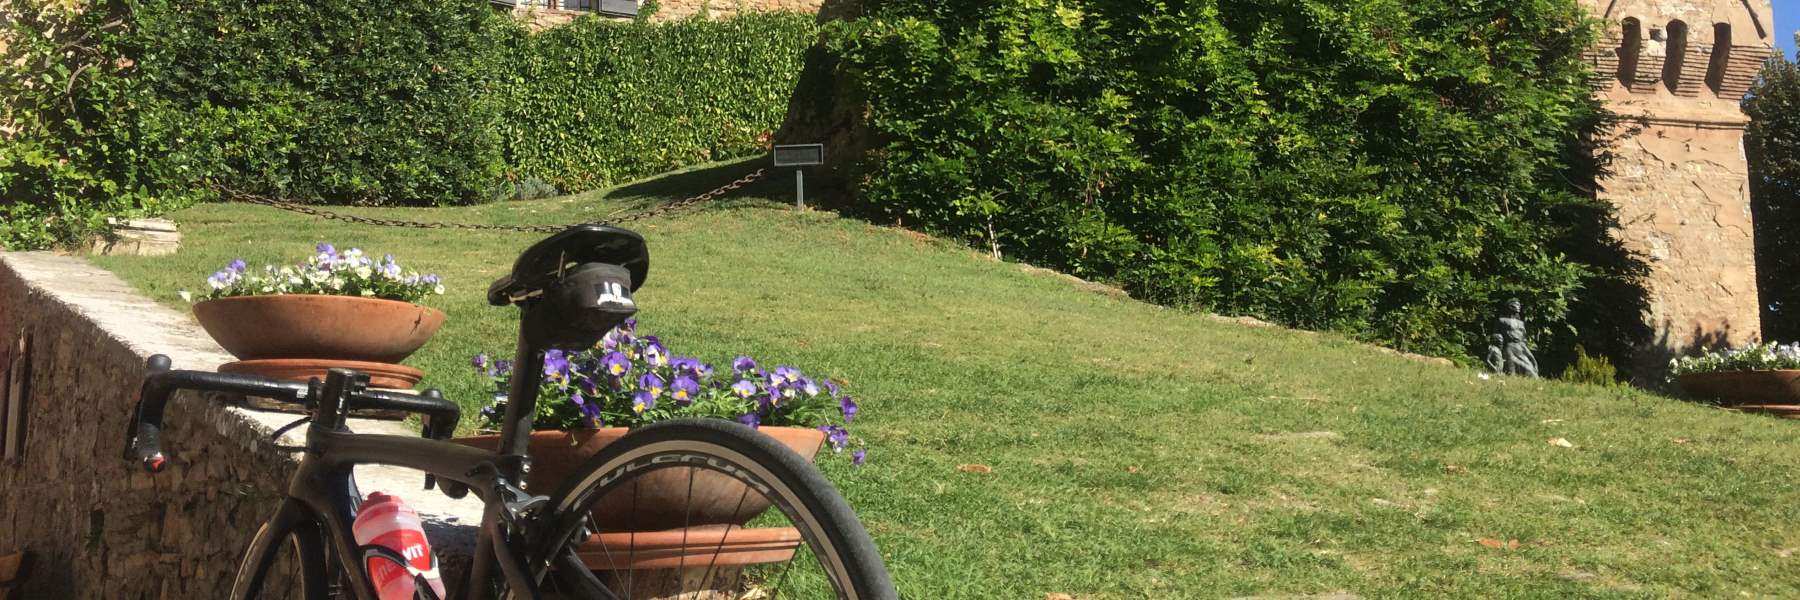 Malatesta Tour, mit dem Fahrrad zwischen den Burgen der Romagna